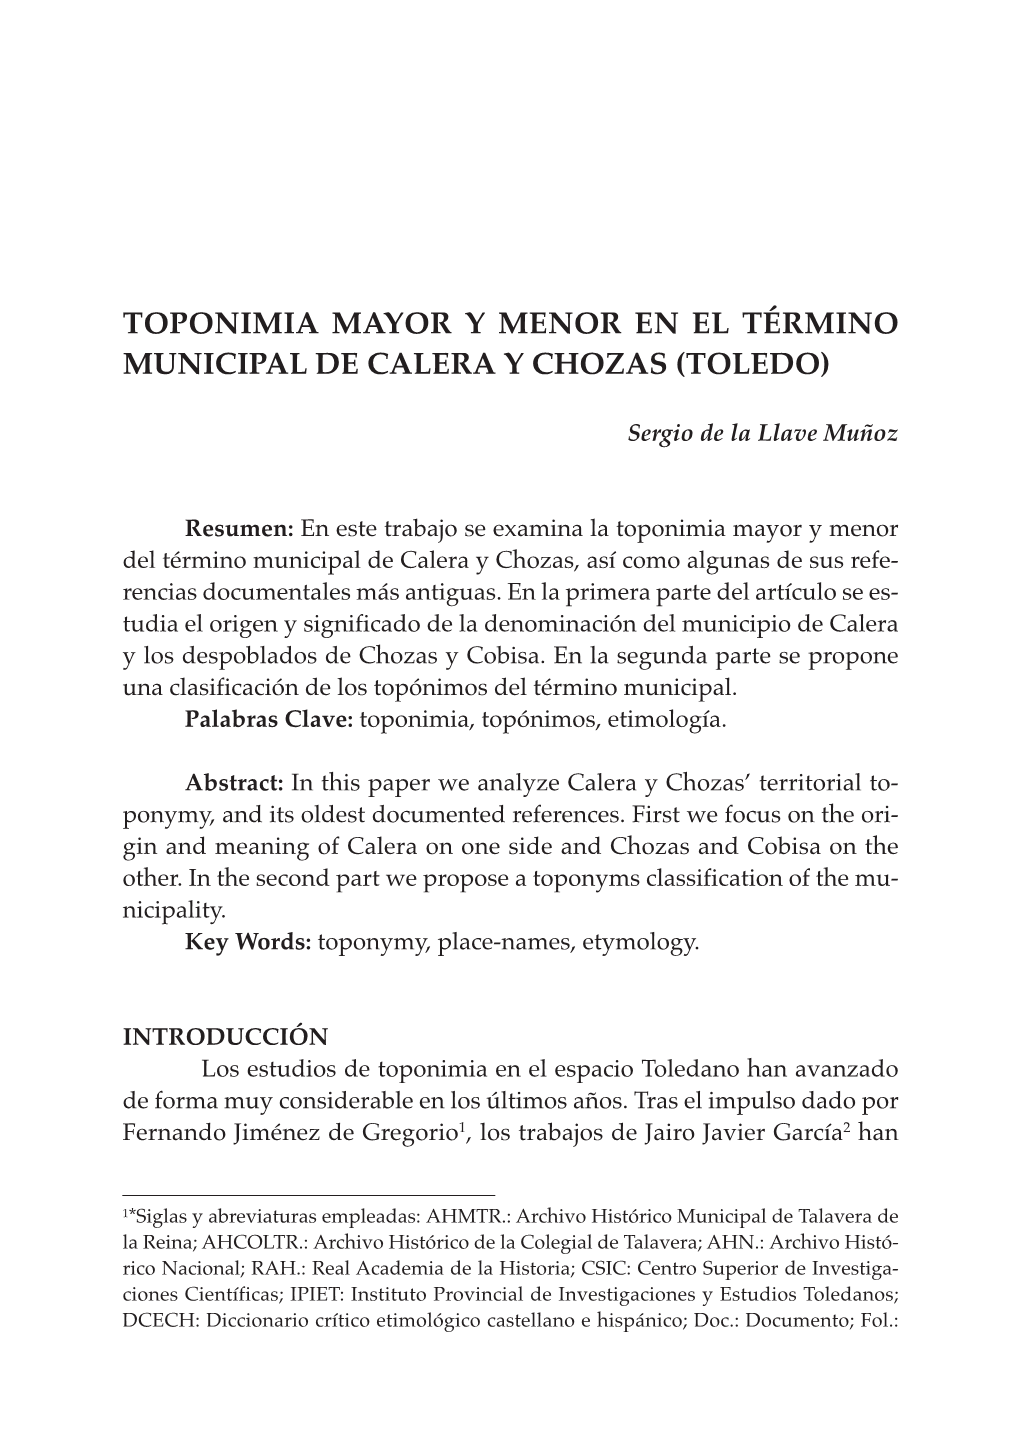 Toponimia Mayor Y Menor En El Término Municipal De Calera Y Chozas (Toledo)